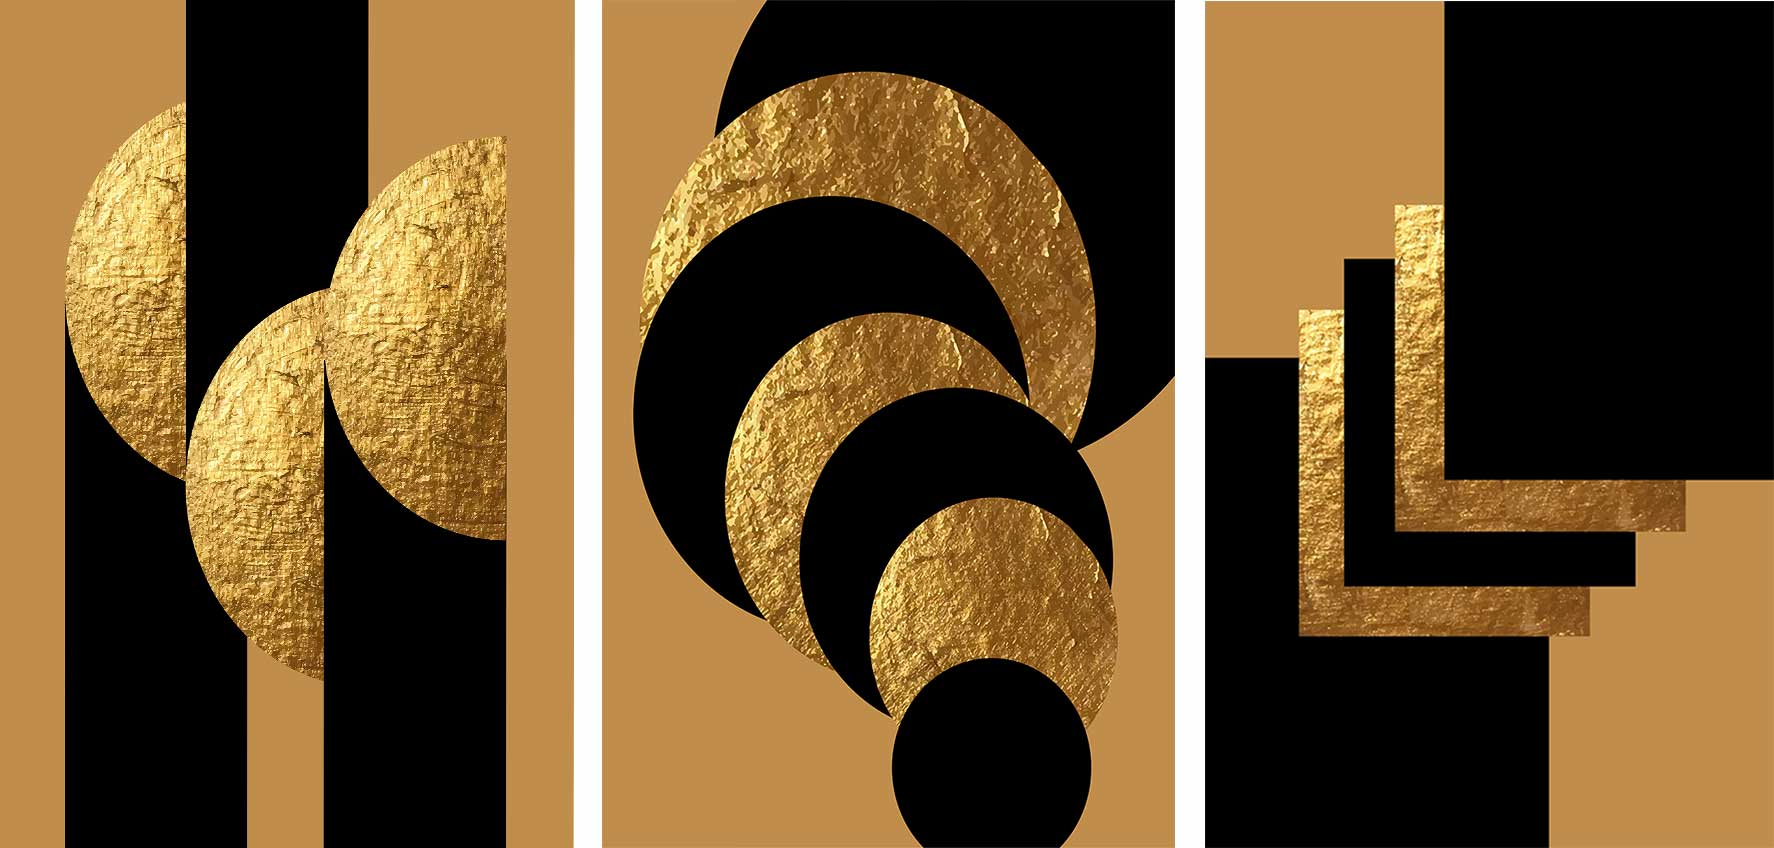 Kit 3 quadros retangulares - Trio de formas pretas e douradas